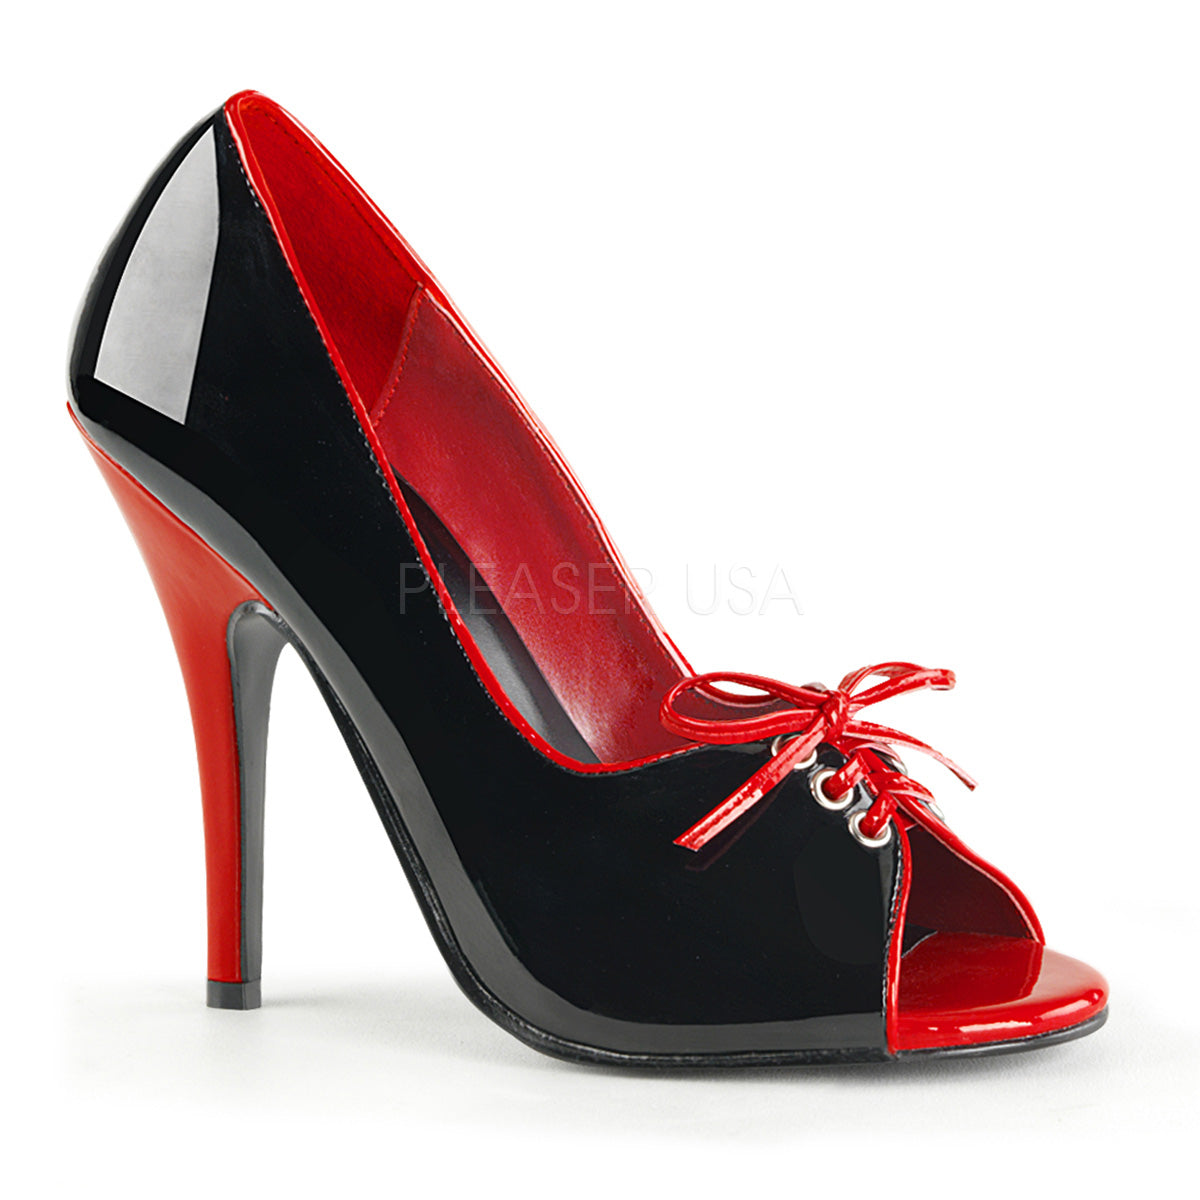 black red high heels